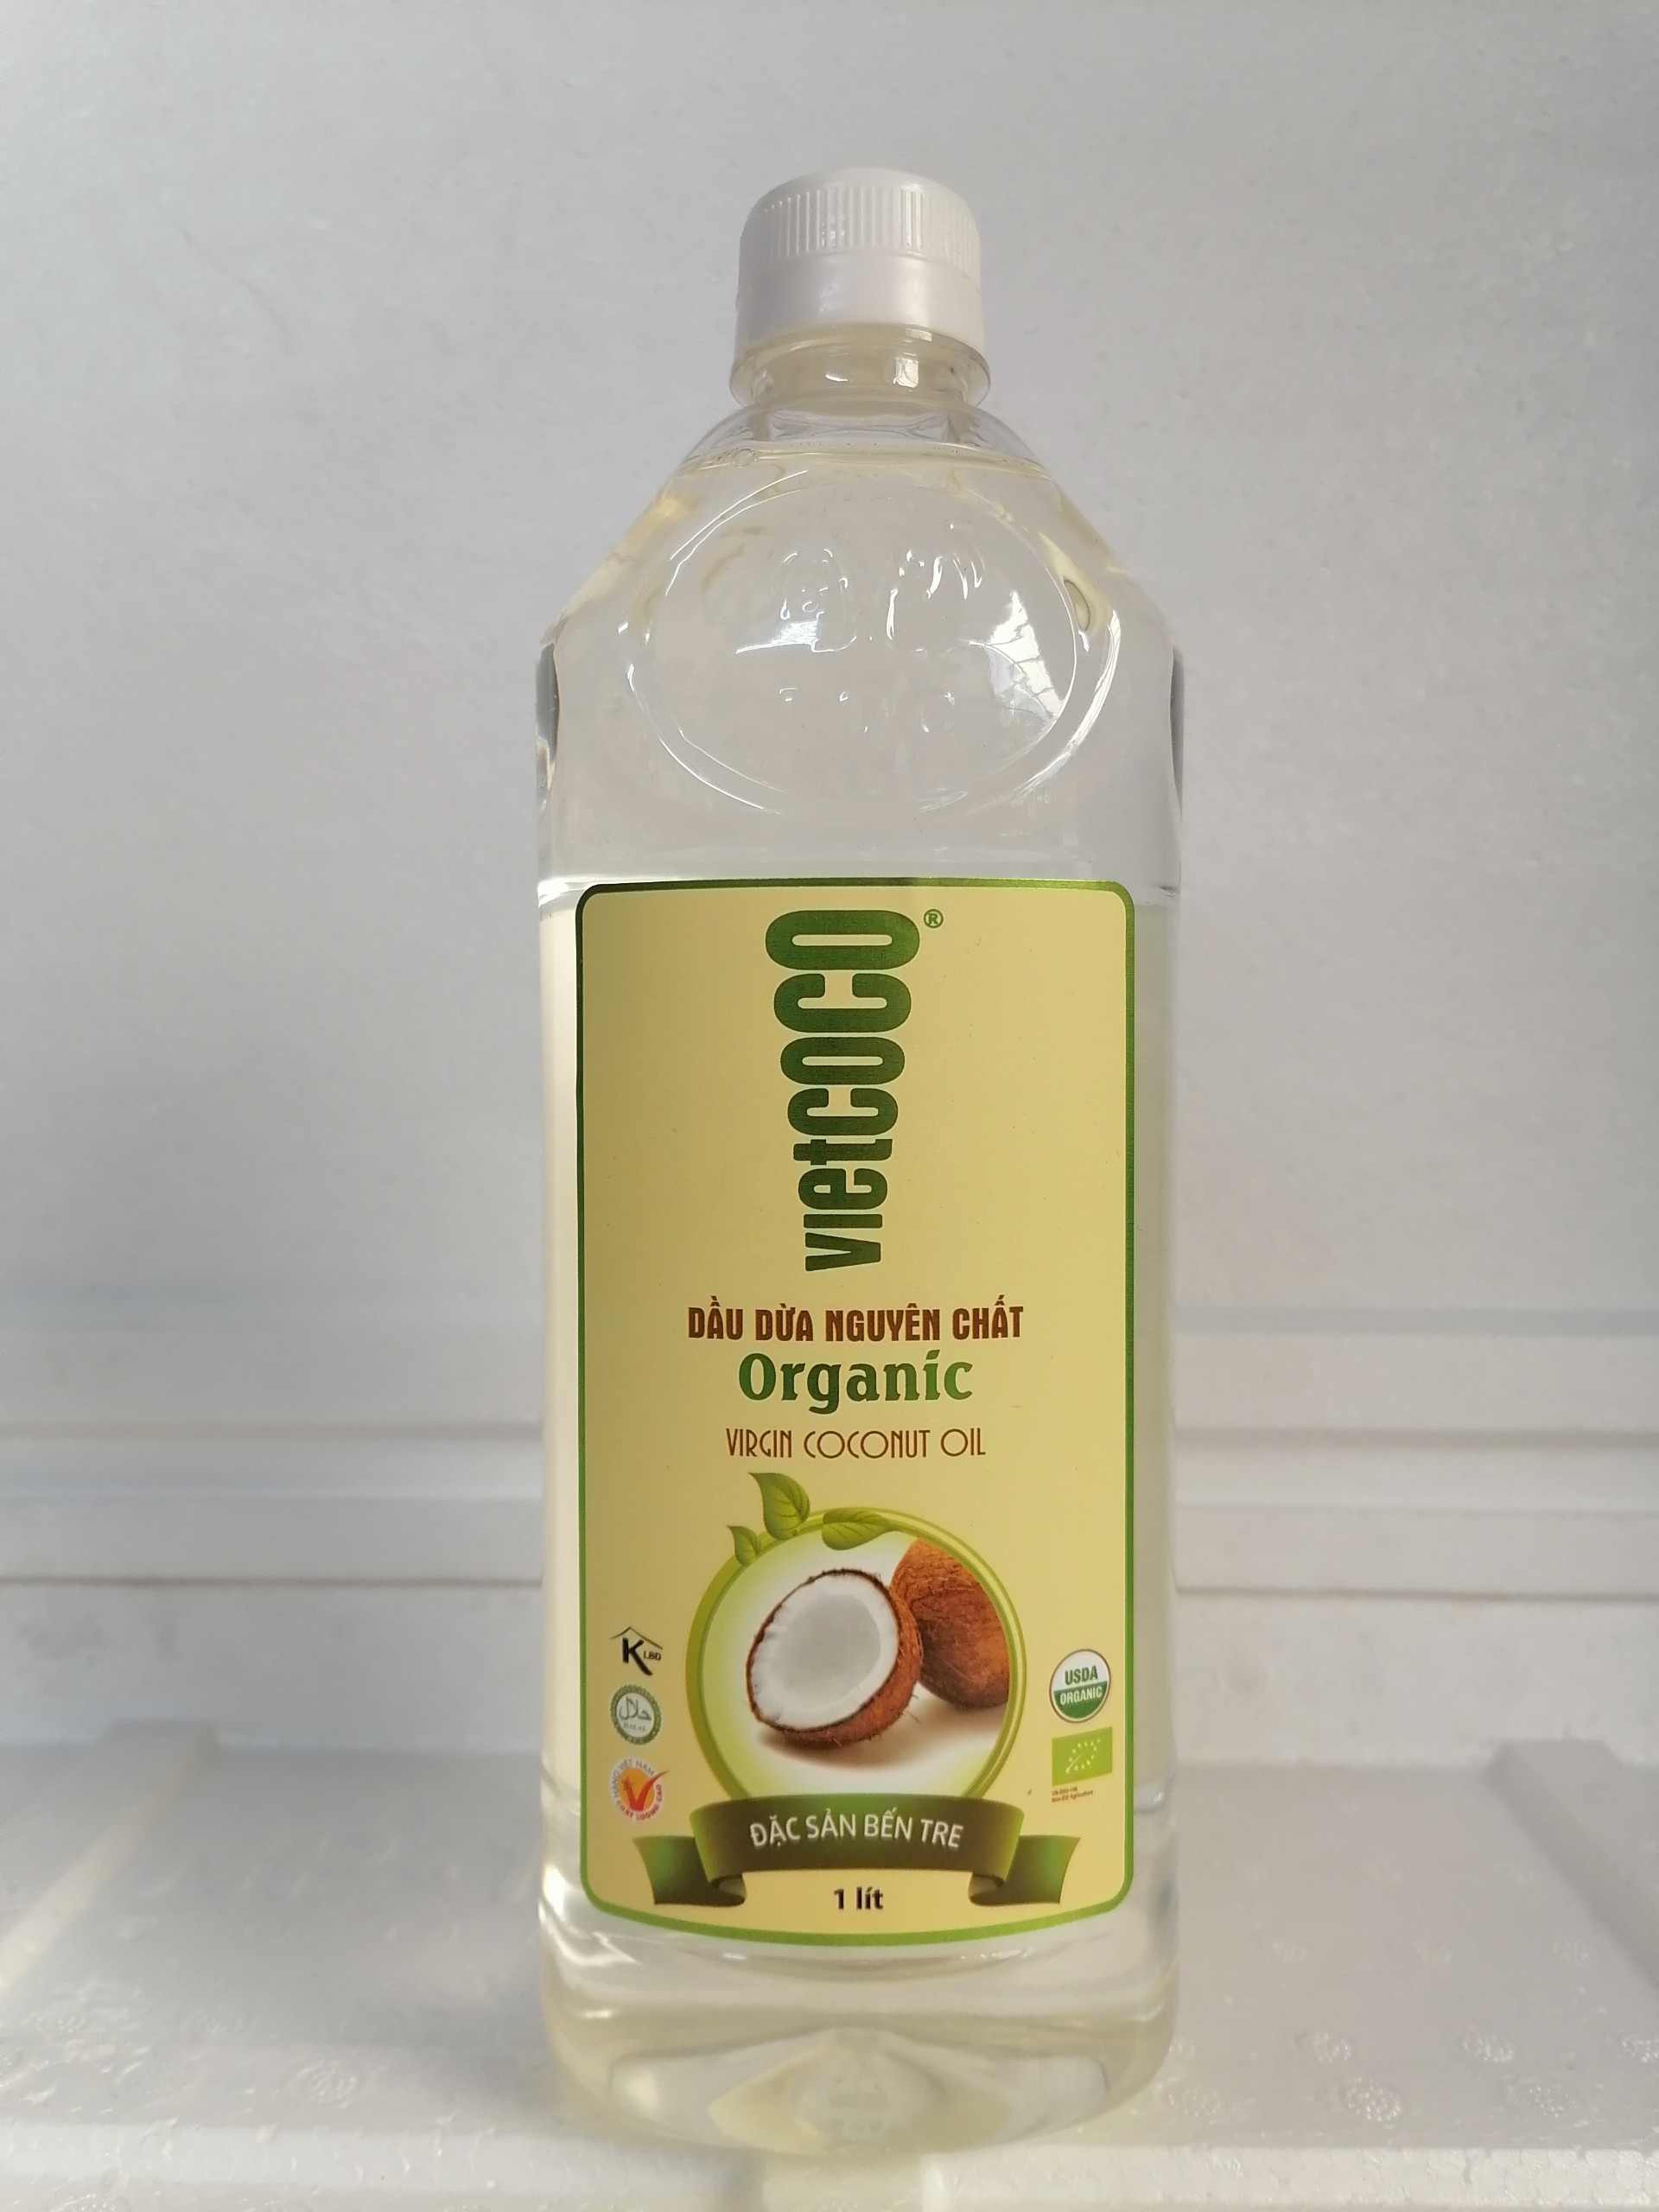 [1 Lít – Organic] Dầu dừa hữu cơ nguyên chất [VN] VIETCOCO Organic Virgin Coconut Oil (halal) (bph-hk5)